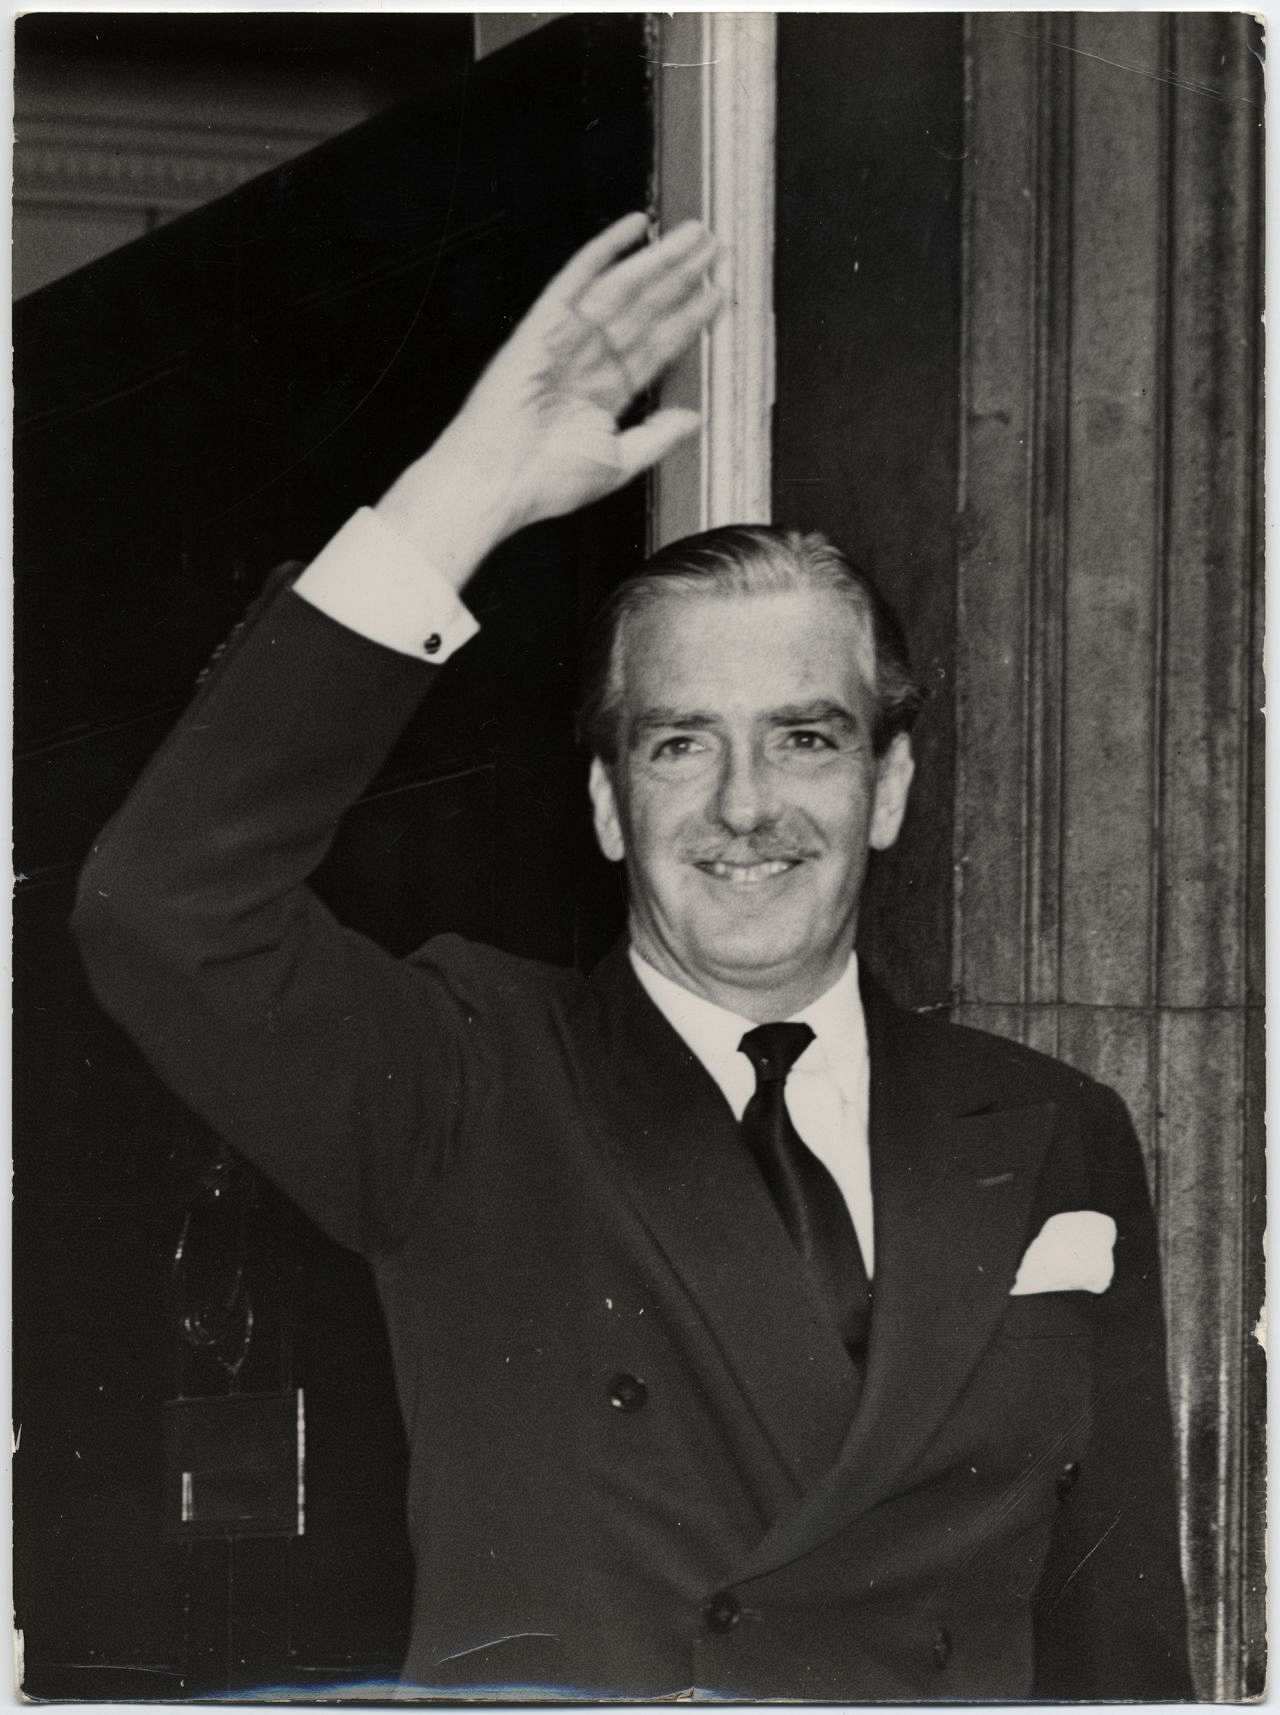 Premierminister Sir Anthony Eden vor der Downing Street Nr. 10, dem Sitz des britischen Premierministers, ca. 1955.